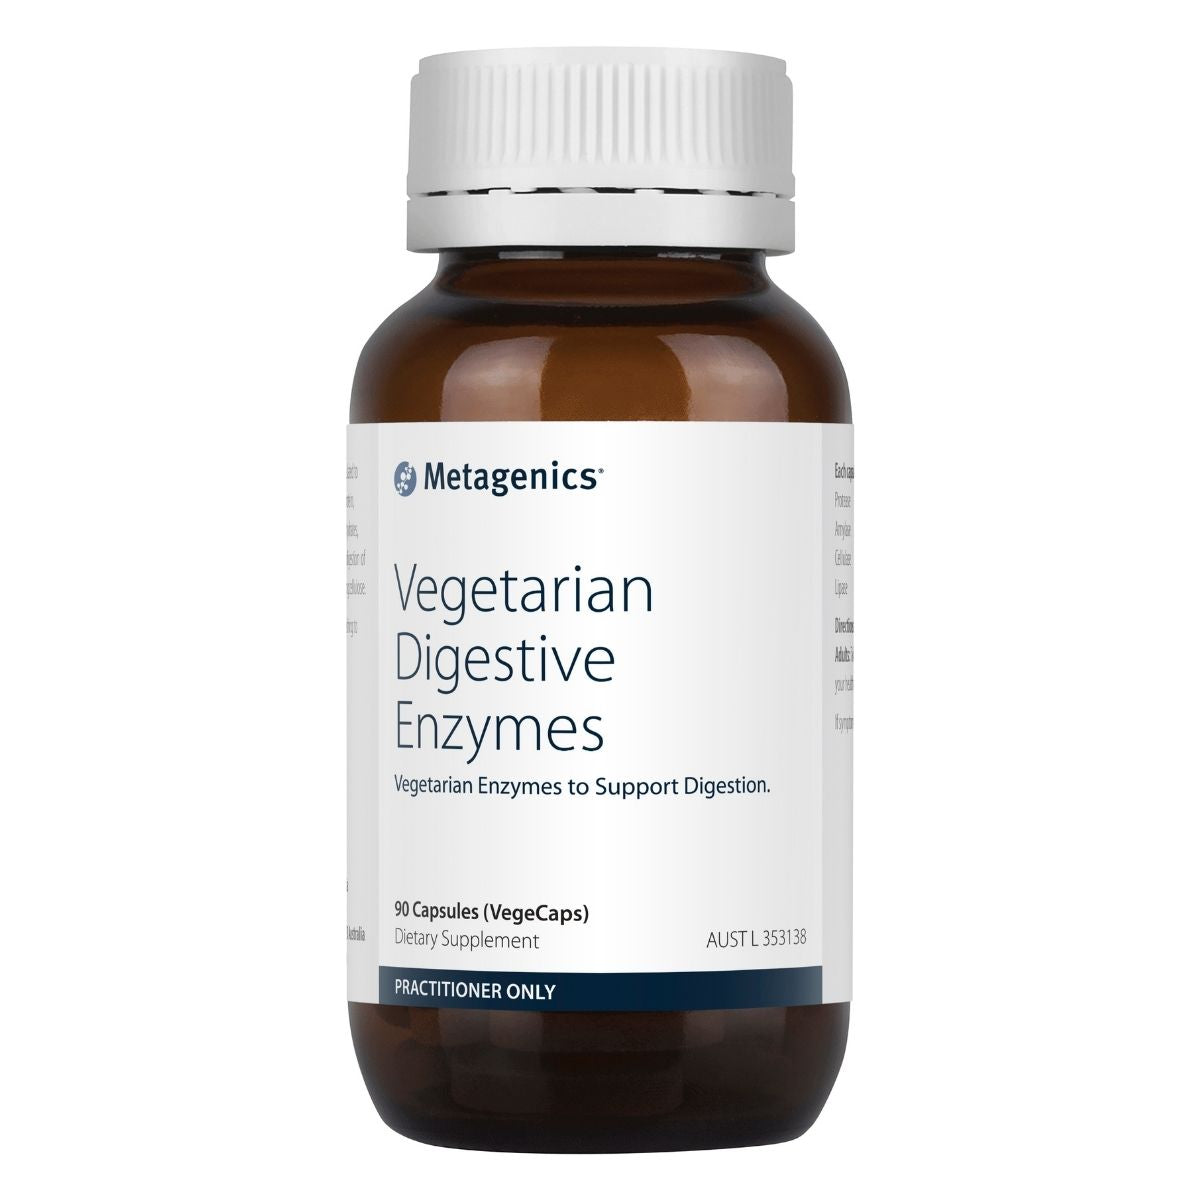 Metagenics Vegetarian Digestive Enzymes